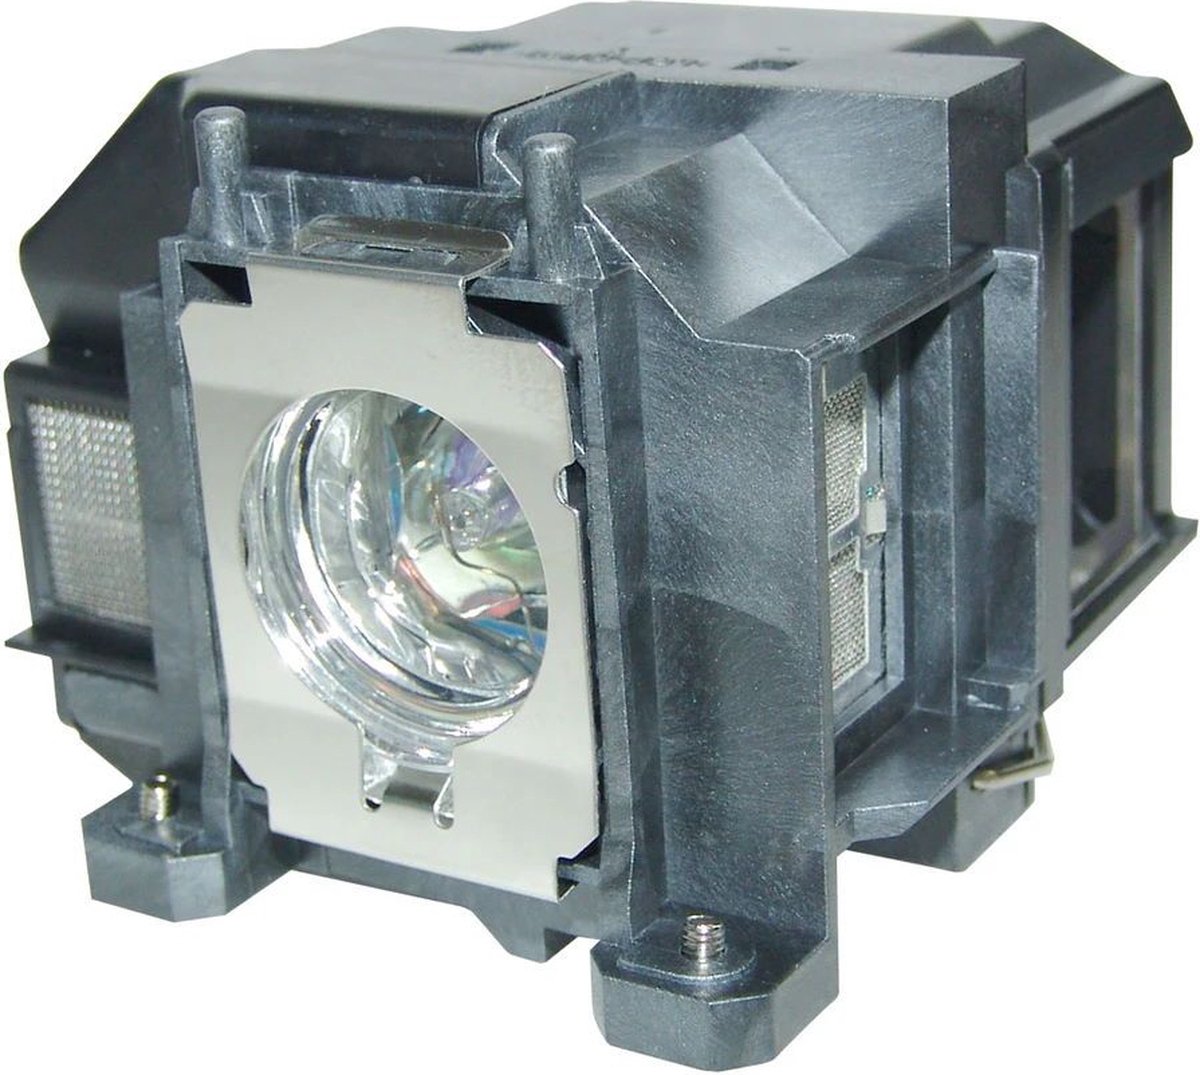 Beamerlamp geschikt voor de EPSON H431A beamer, lamp code LP67 / V13H010L67. Bevat originele P-VIP lamp, prestaties gelijk aan origineel.